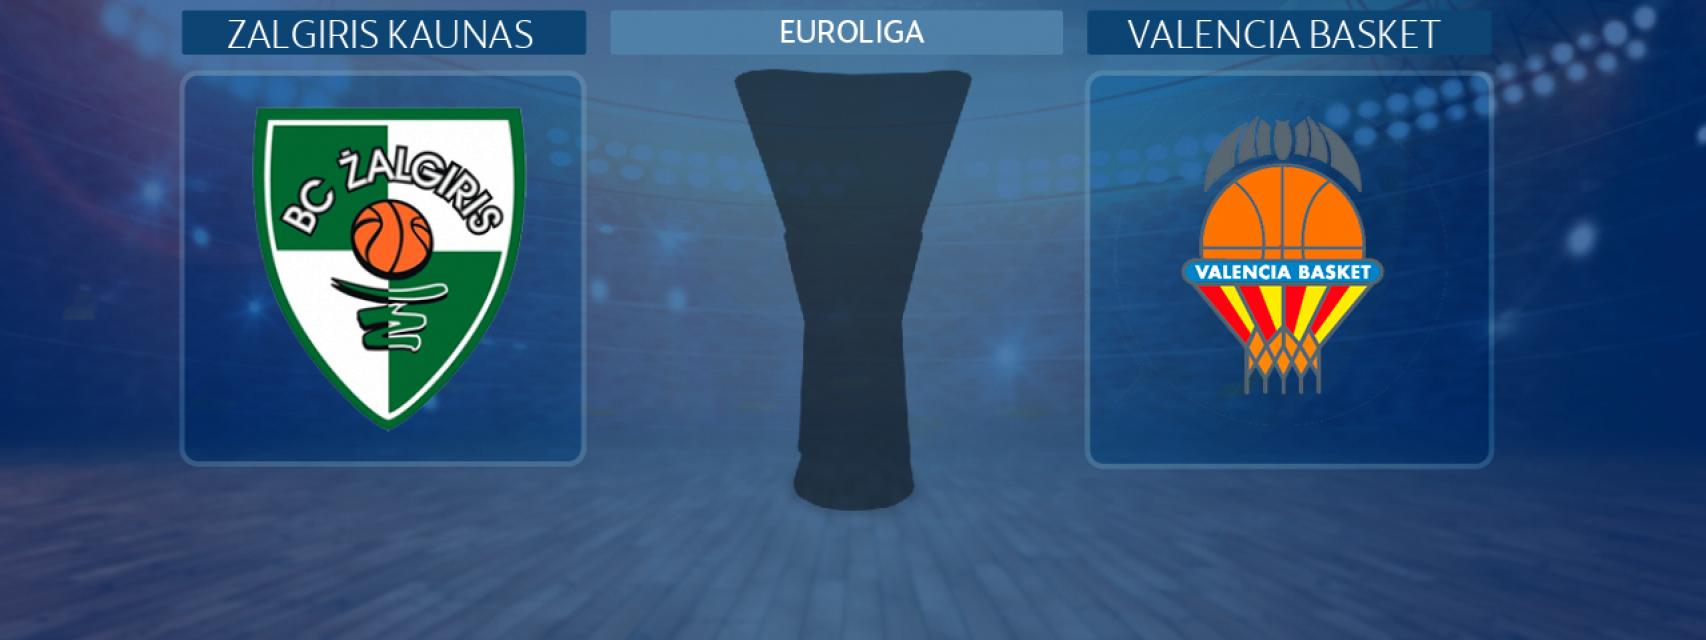 Zalgiris Kaunas - Valencia Basket, partido de la Euroliga